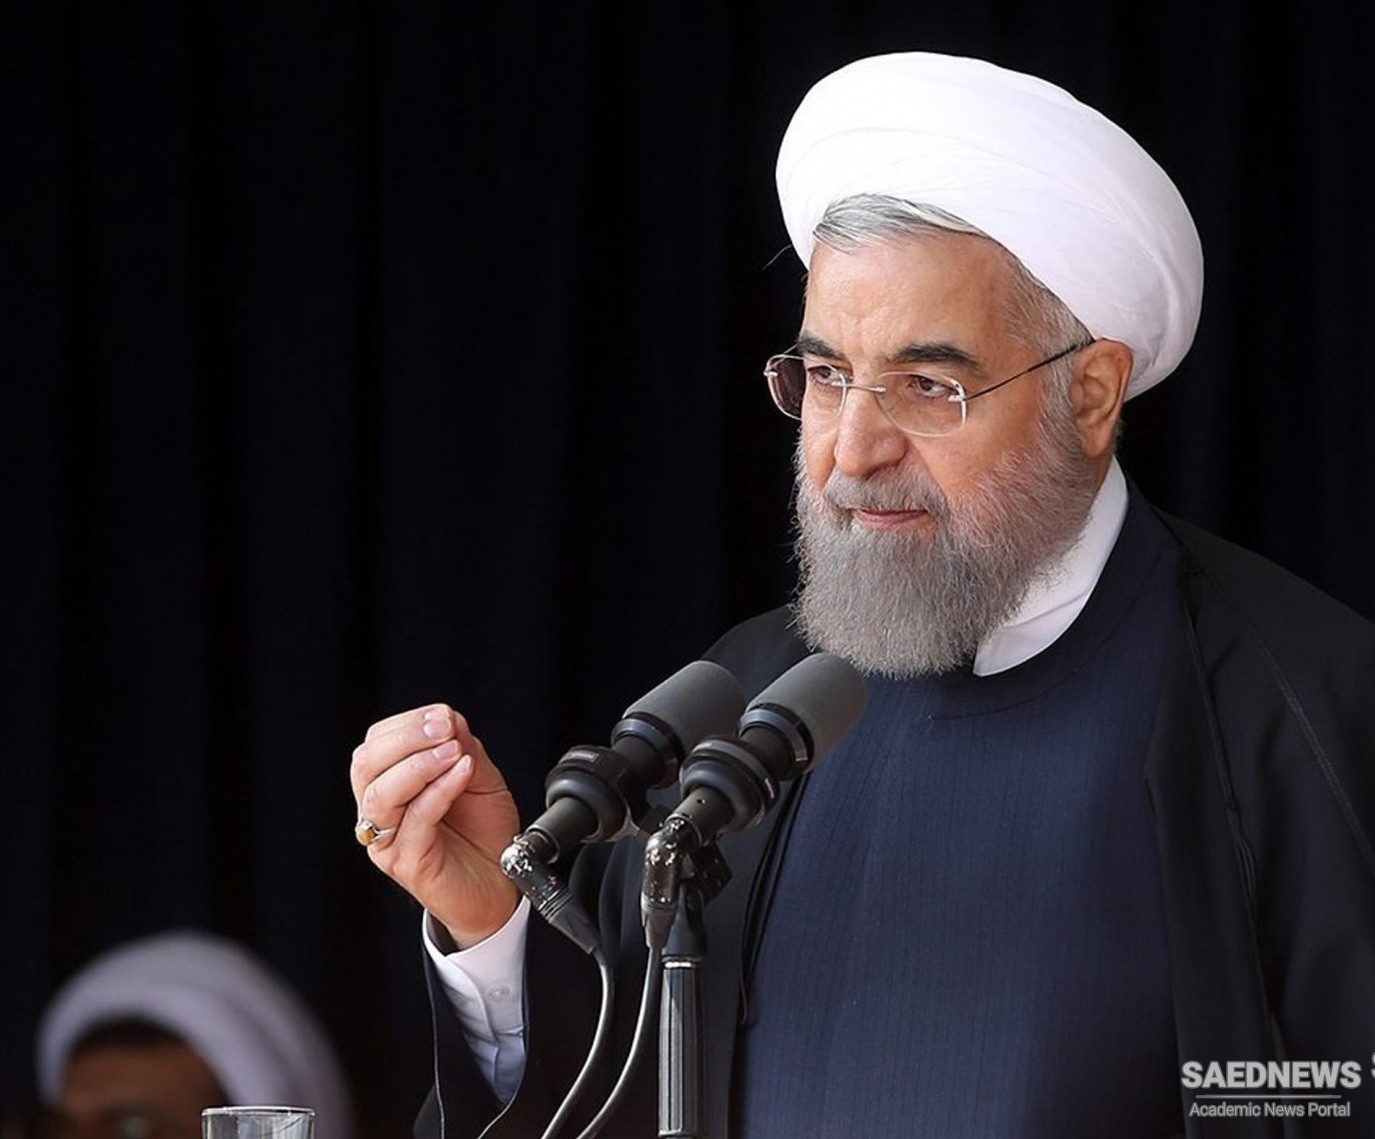 राष्ट्रपति रूहानी ने आईसीजे के अमेरिका के इनकार का वर्णन किया जीत के रूप में ईरान के मुकदमे के खिलाफ आपत्ति